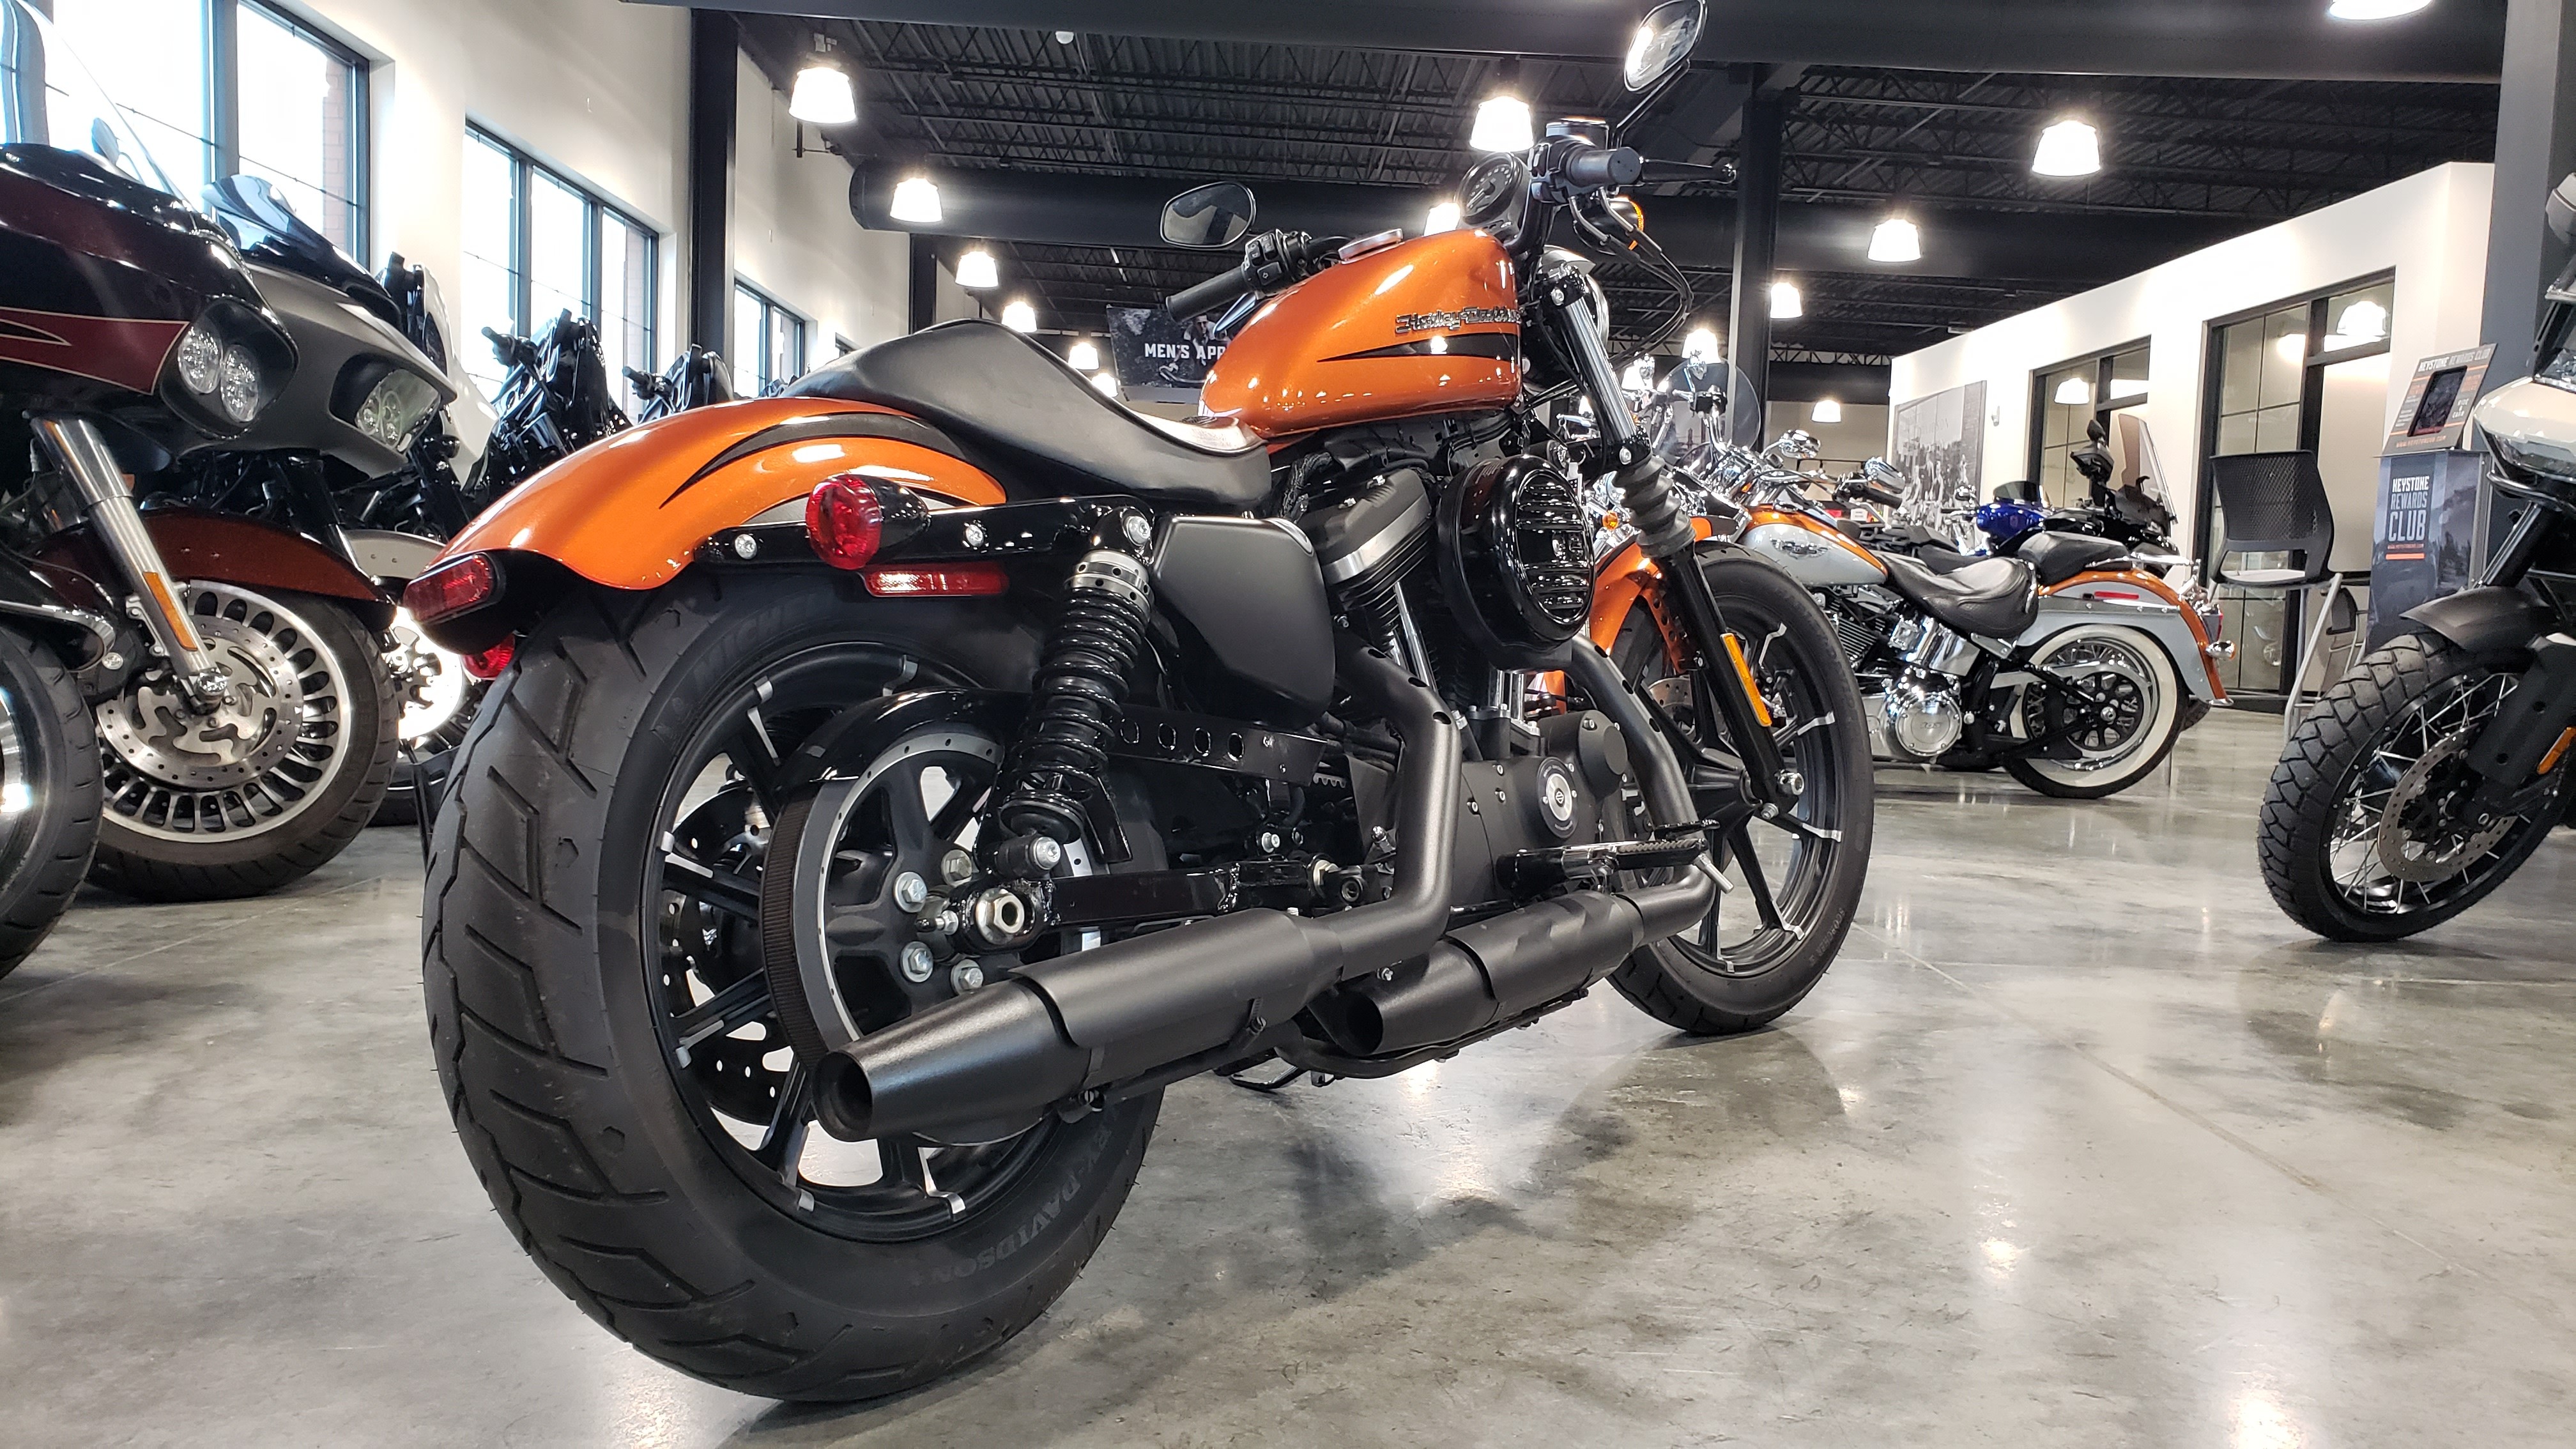 2020 Harley-Davidson Sportster Iron 883 at Keystone Harley-Davidson